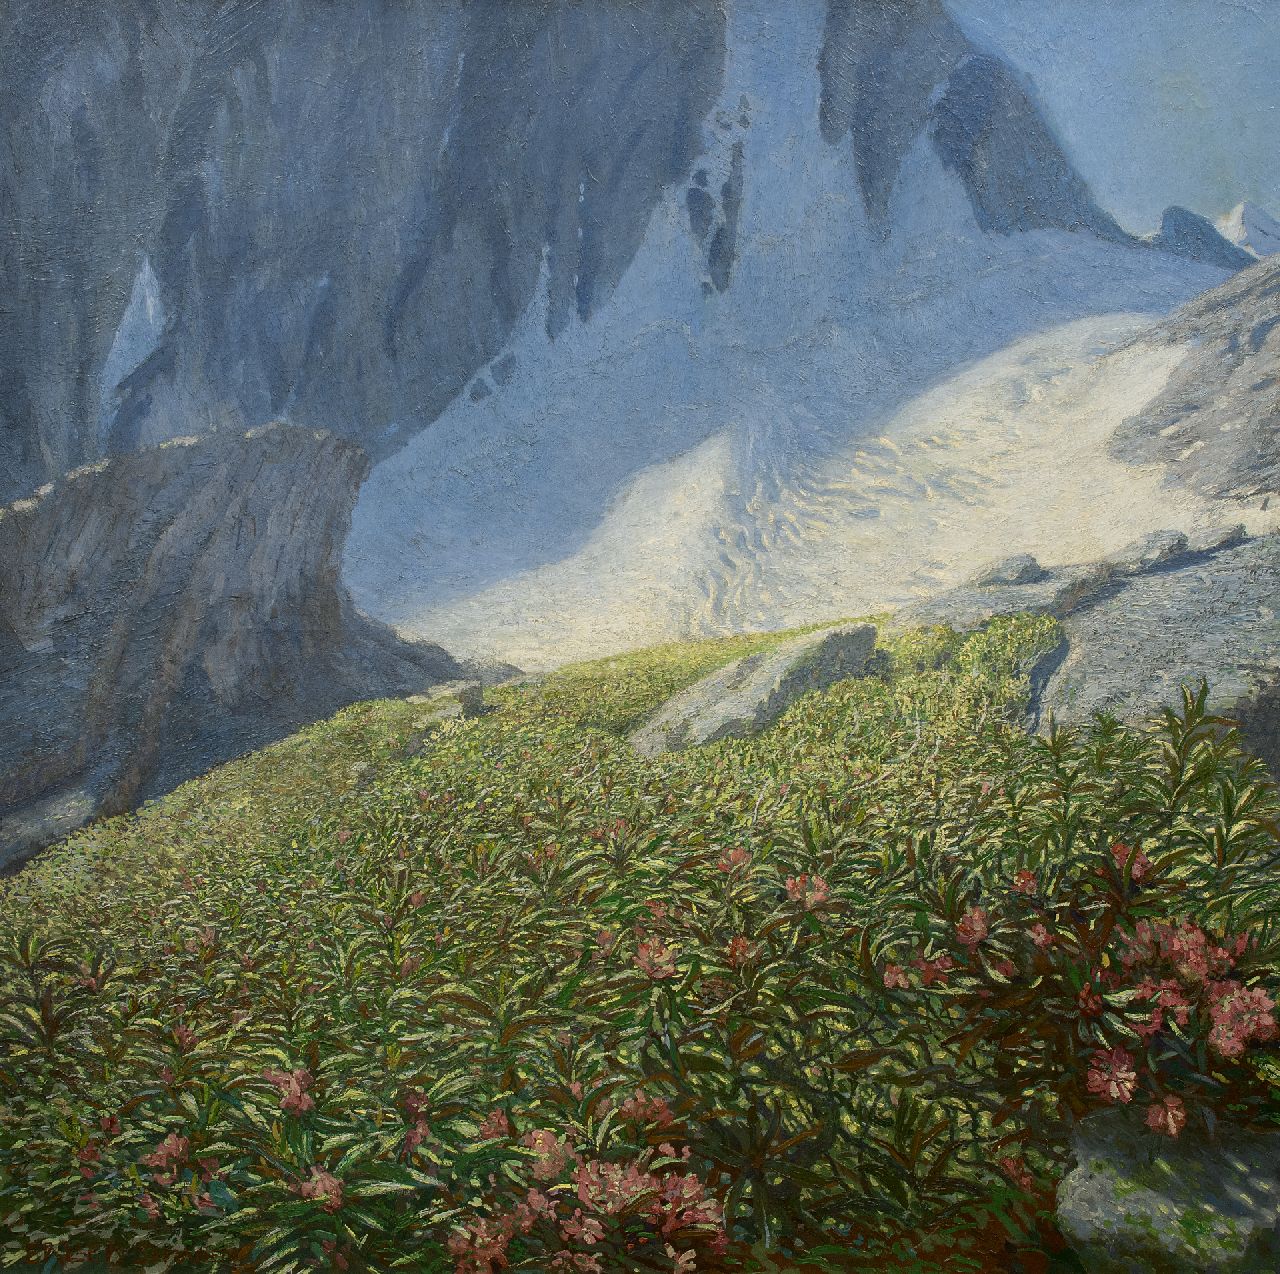 Erler-Samaden E.  | Erich Erler-Samaden | Schilderijen te koop aangeboden | Bloemenveld bij een gletsjer, olieverf op doek 120,0 x 120,0 cm, gesigneerd linksonder